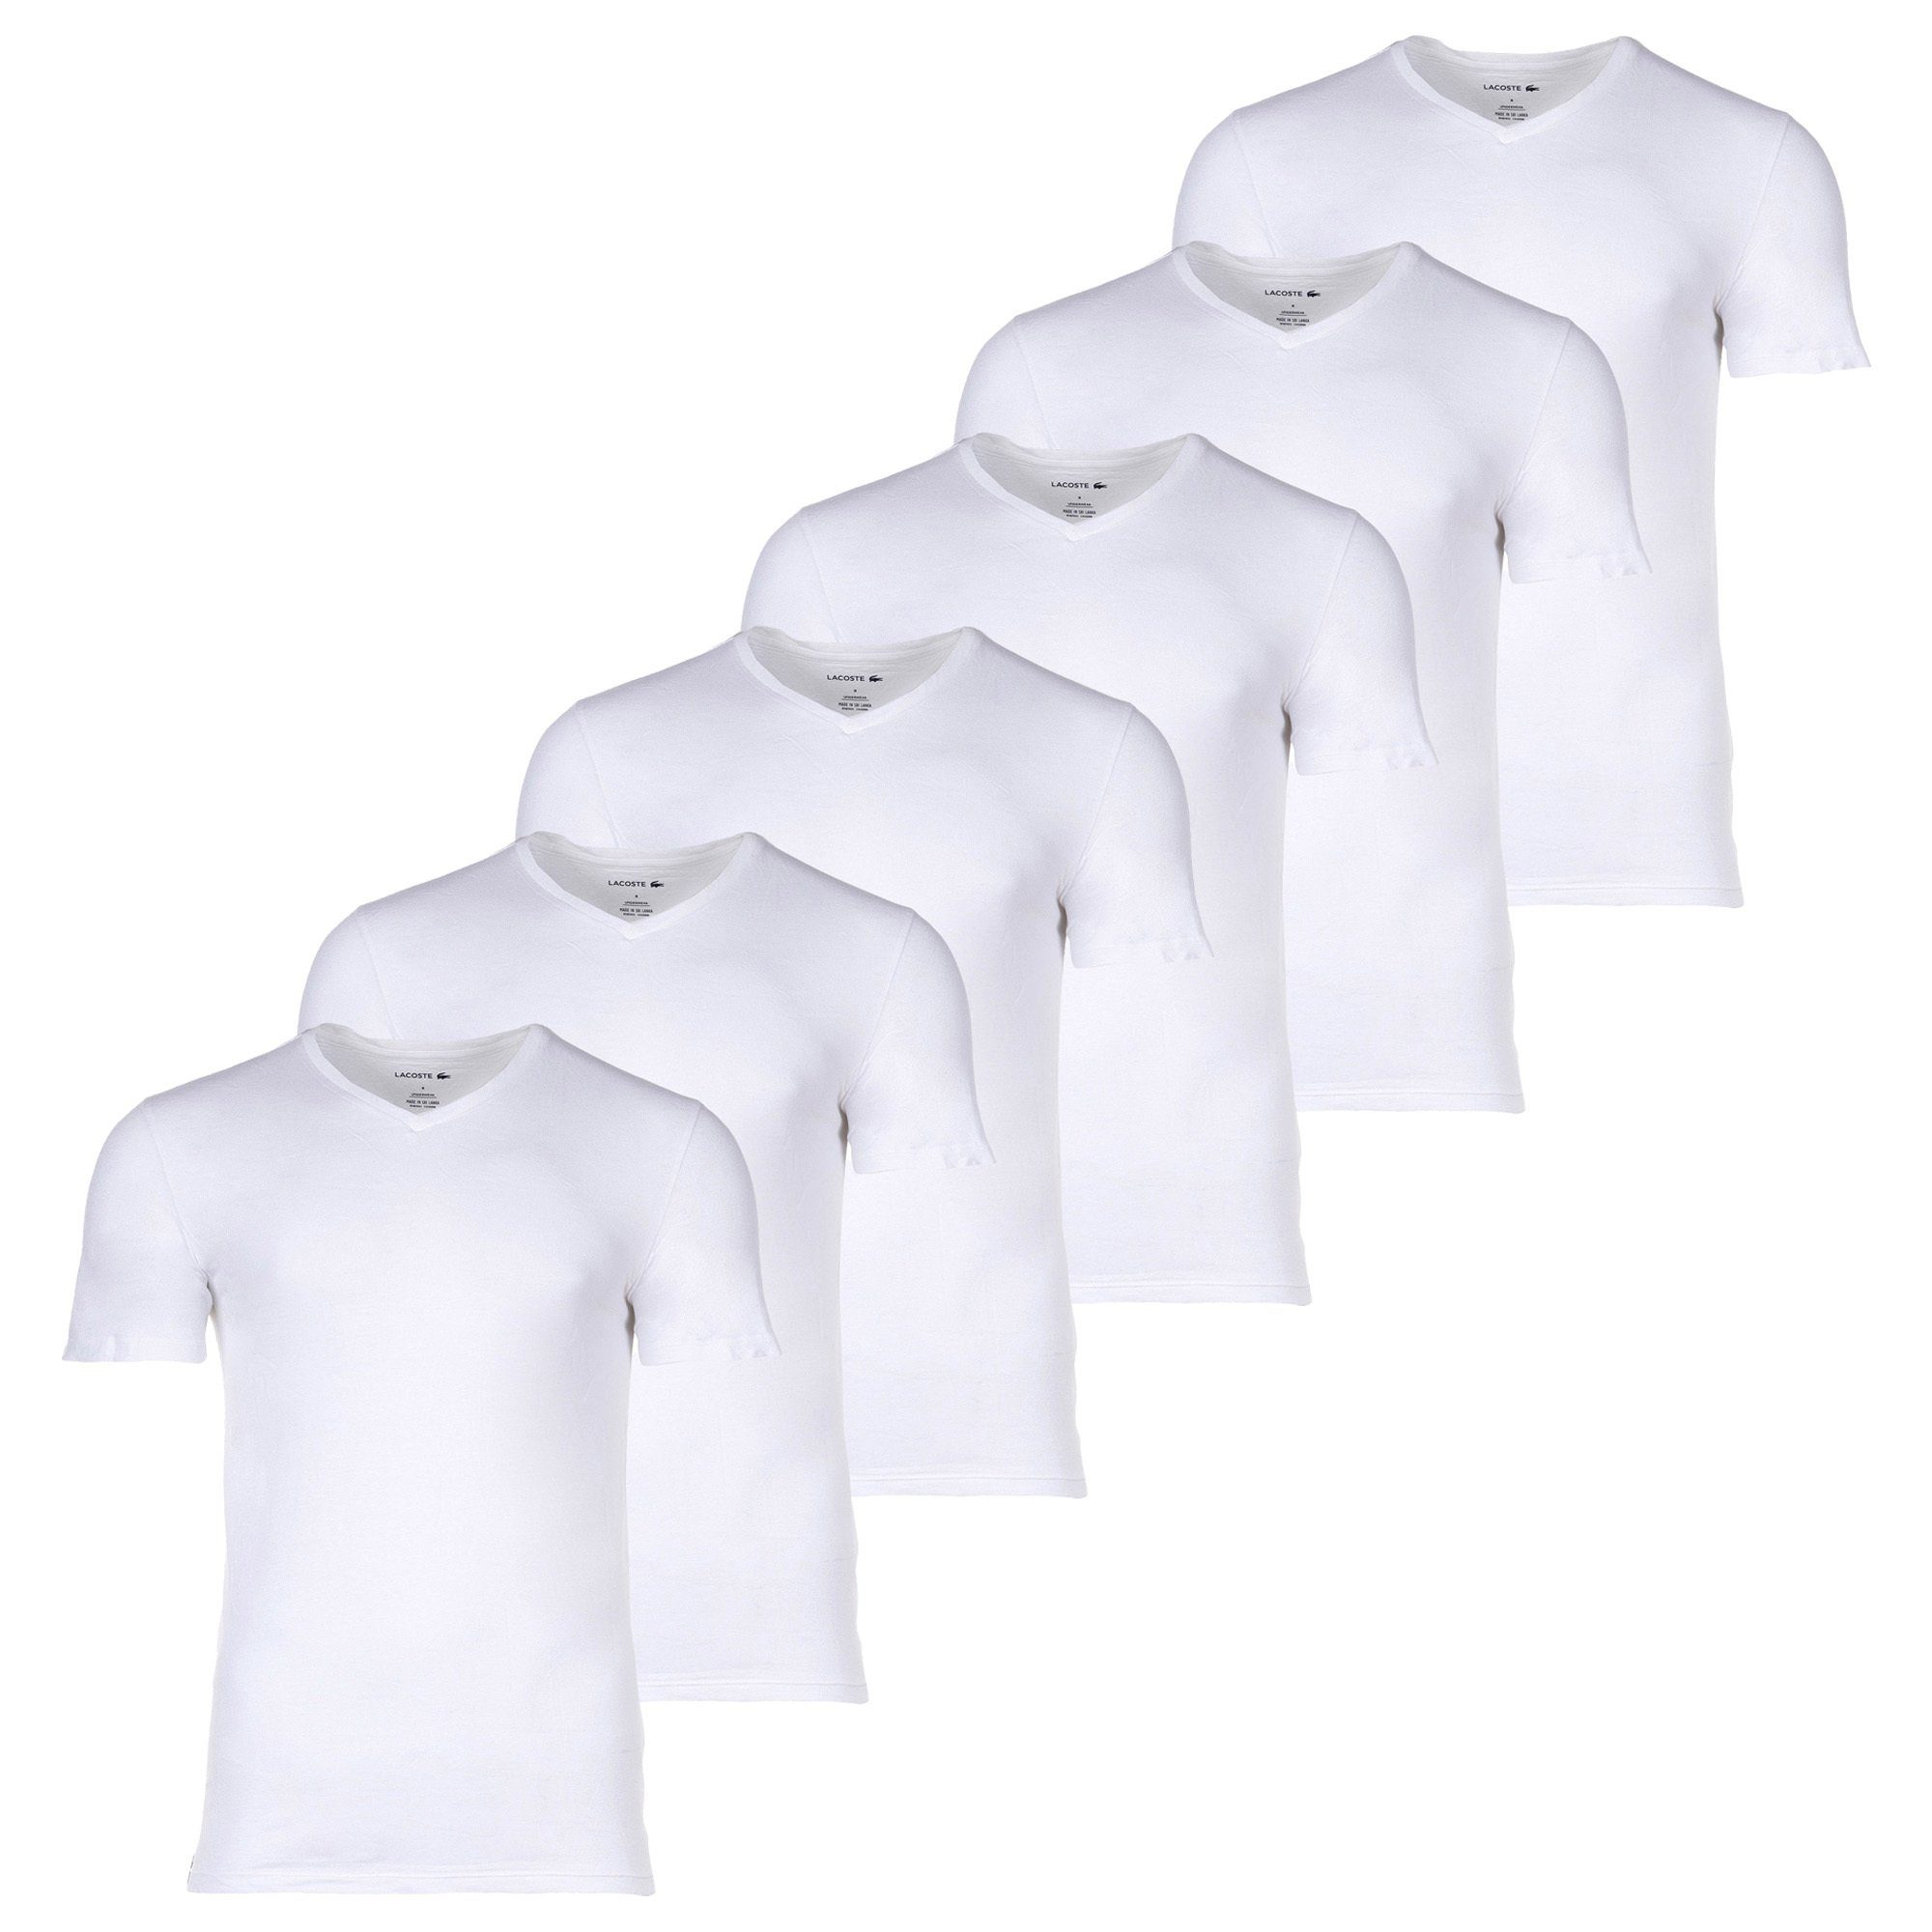 Lacoste T-Shirt Herren T-Shirts, 6er Pack - Essentials Weiß